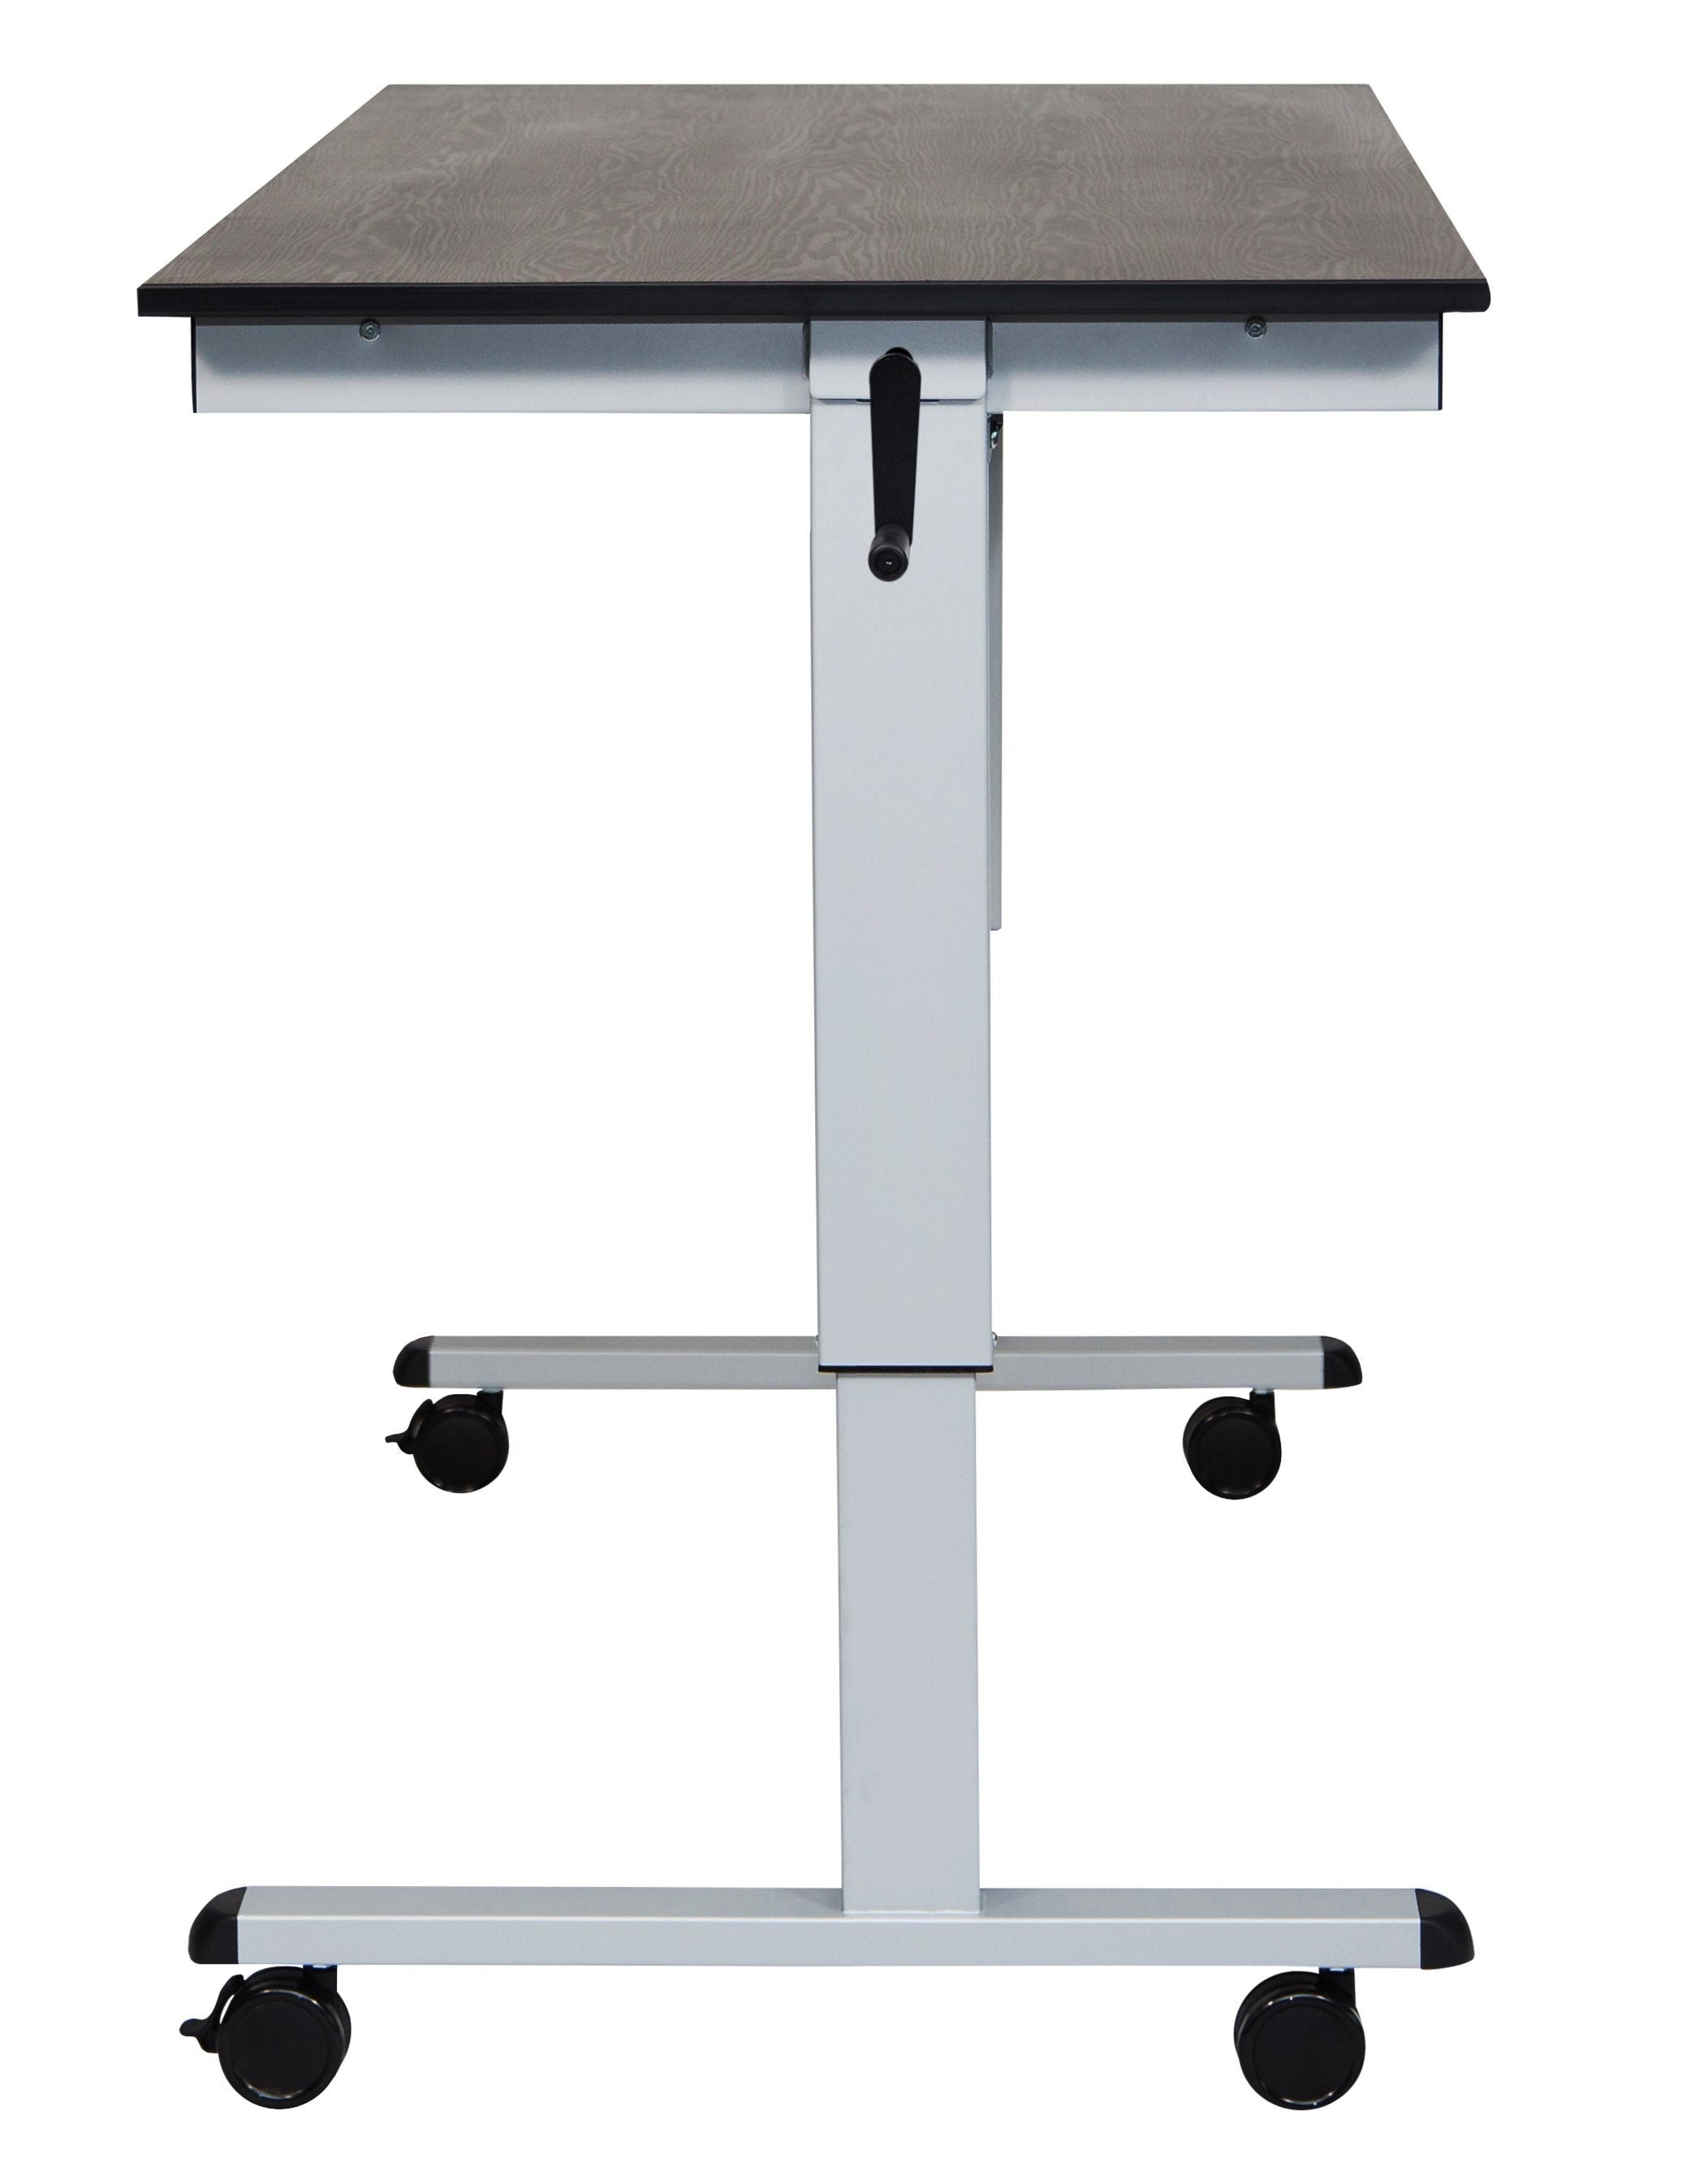 Luxor STANDCF60-AG/BO Crank Adjustable Stand Up Desk